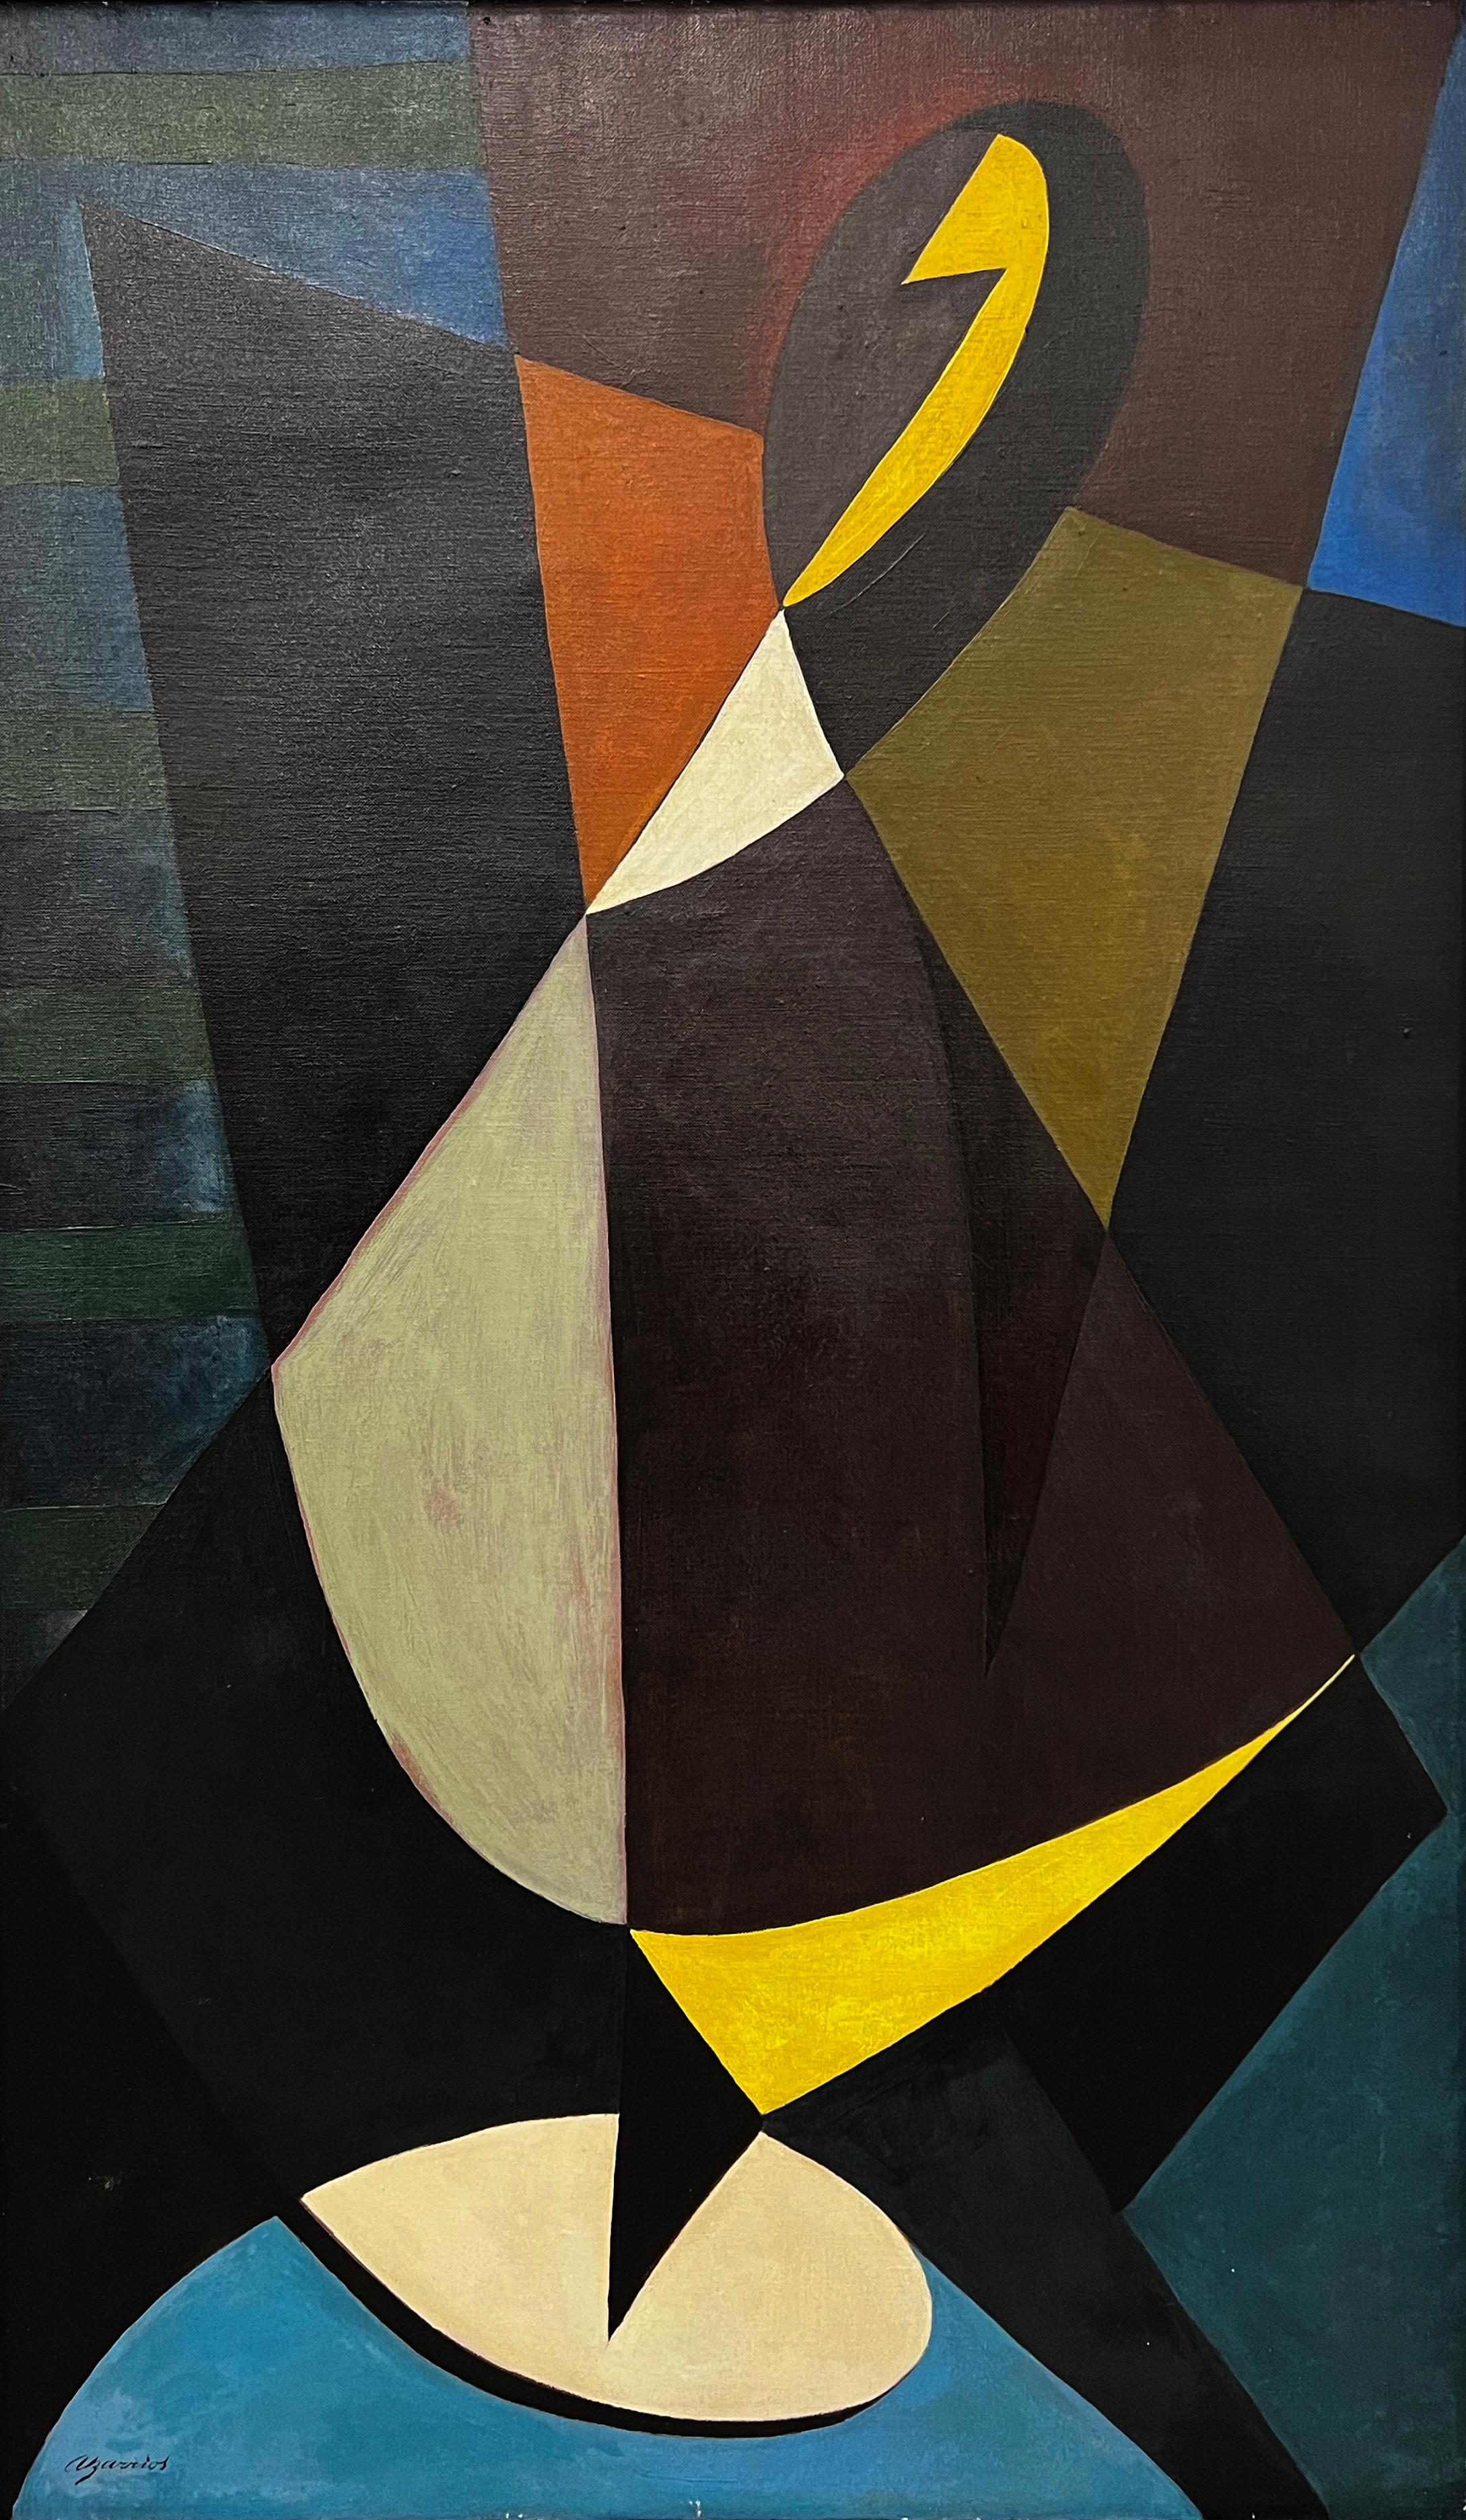 Armando Barrios, Composición XXVI, 1955, huile sur toile, 110 x 66 cm